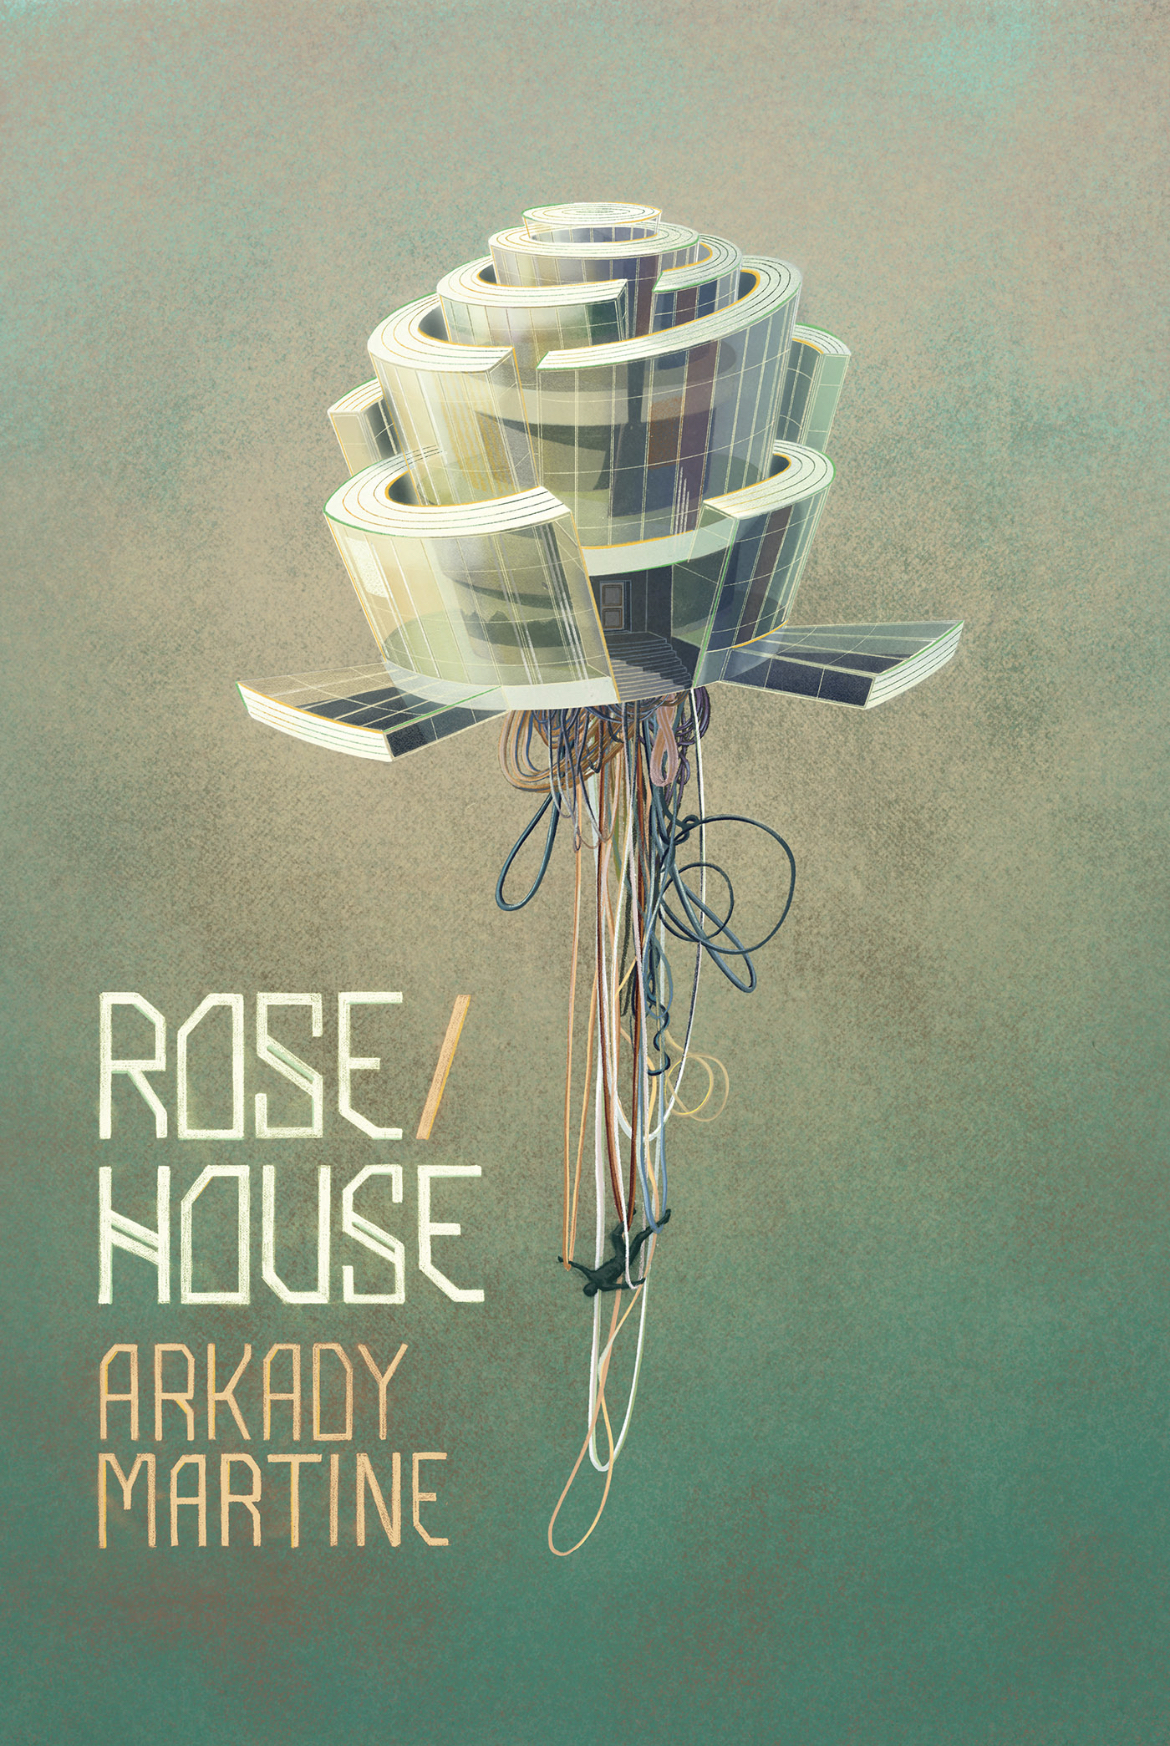 Rose/House (Subterranean Press)